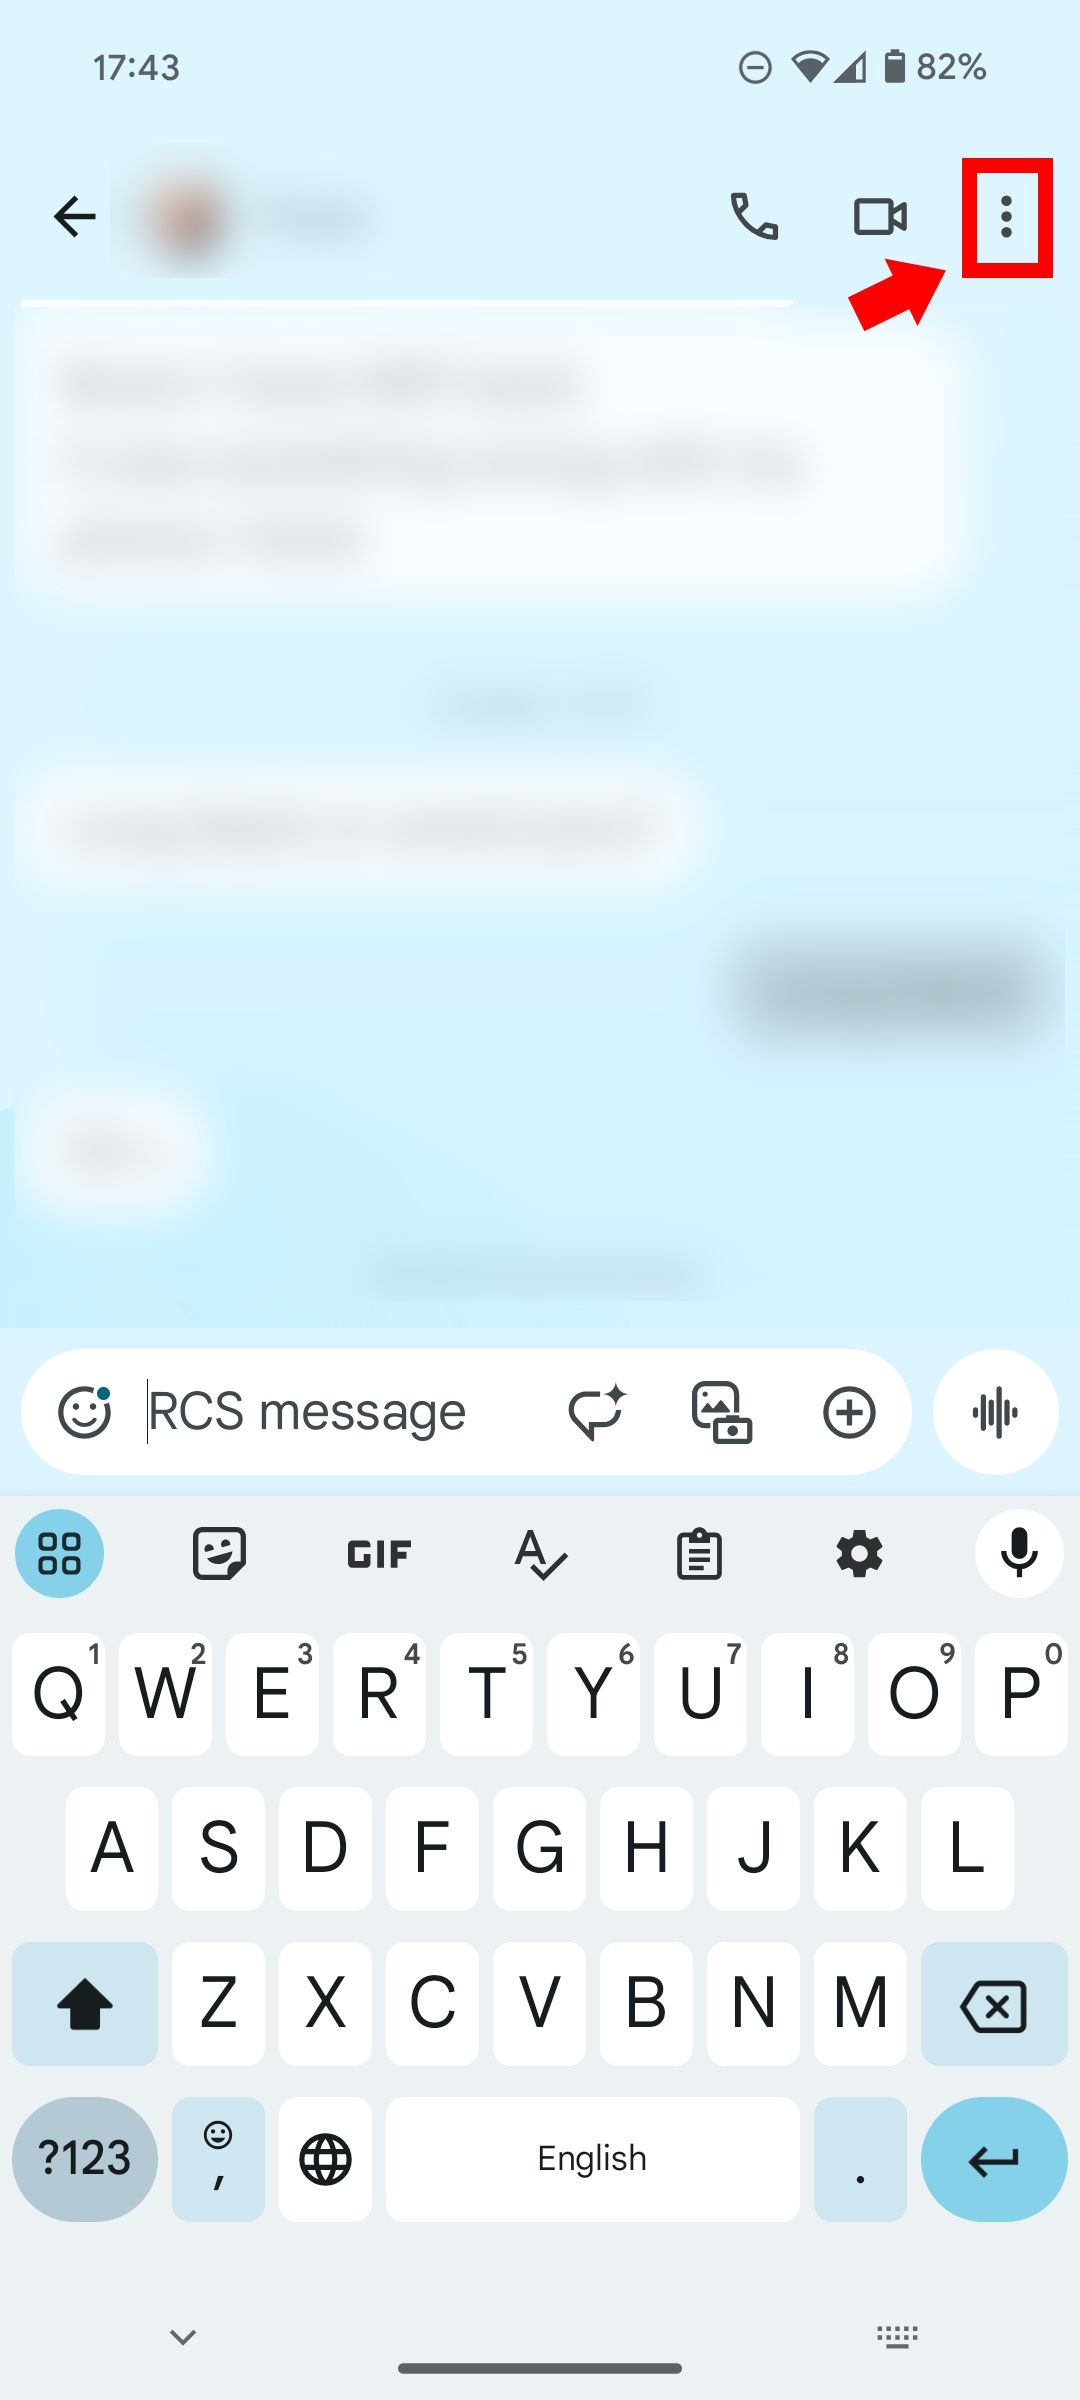 Seta sólida vermelha apontando para um pequeno contorno de retângulo vermelho sobre o ícone de três pontos próximo à câmera no Mensagens do Google em um telefone Android